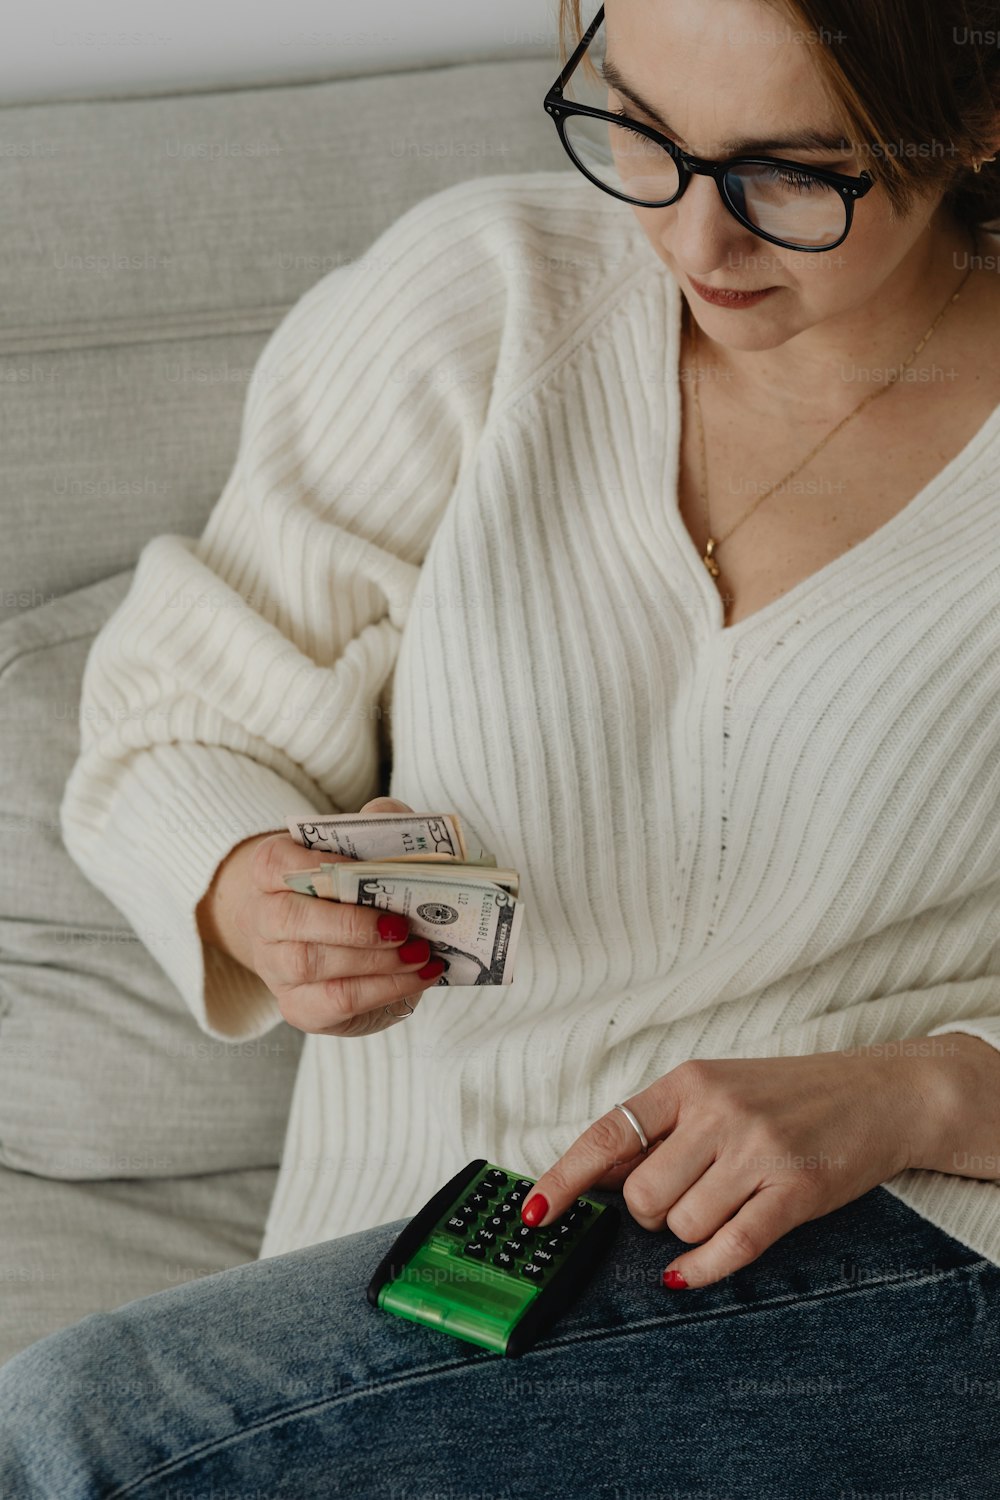 Una mujer sentada en un sofá sosteniendo dinero y un teléfono celular